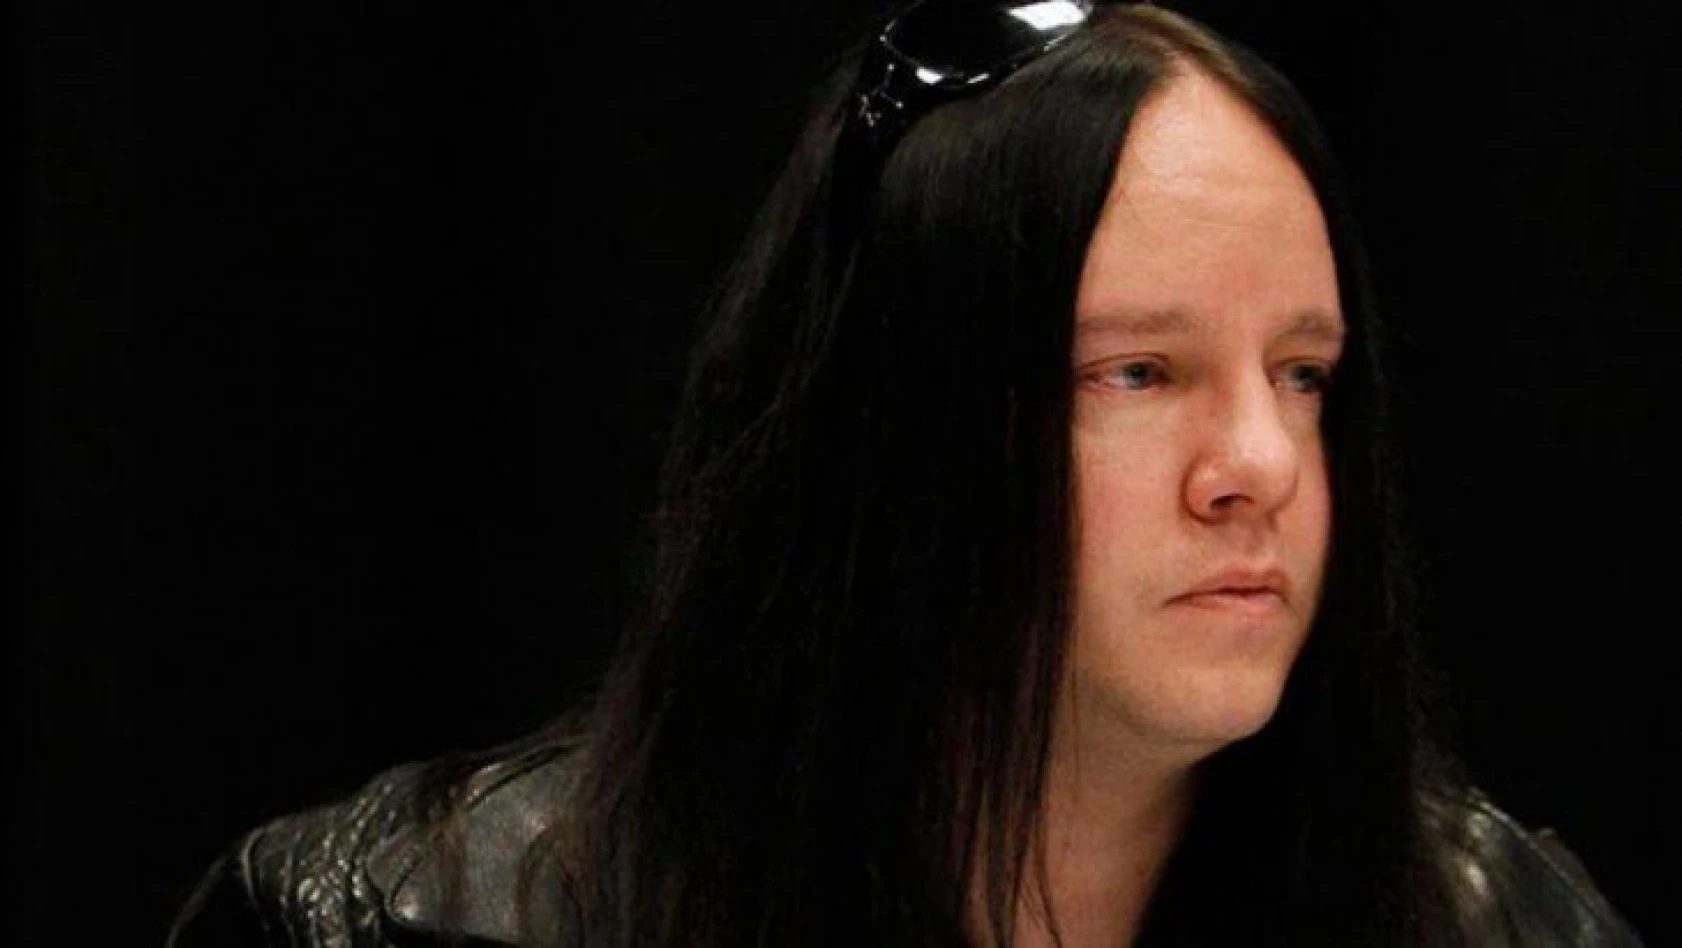 Müzisyen Joey Jordison, yaşamını yitirdi